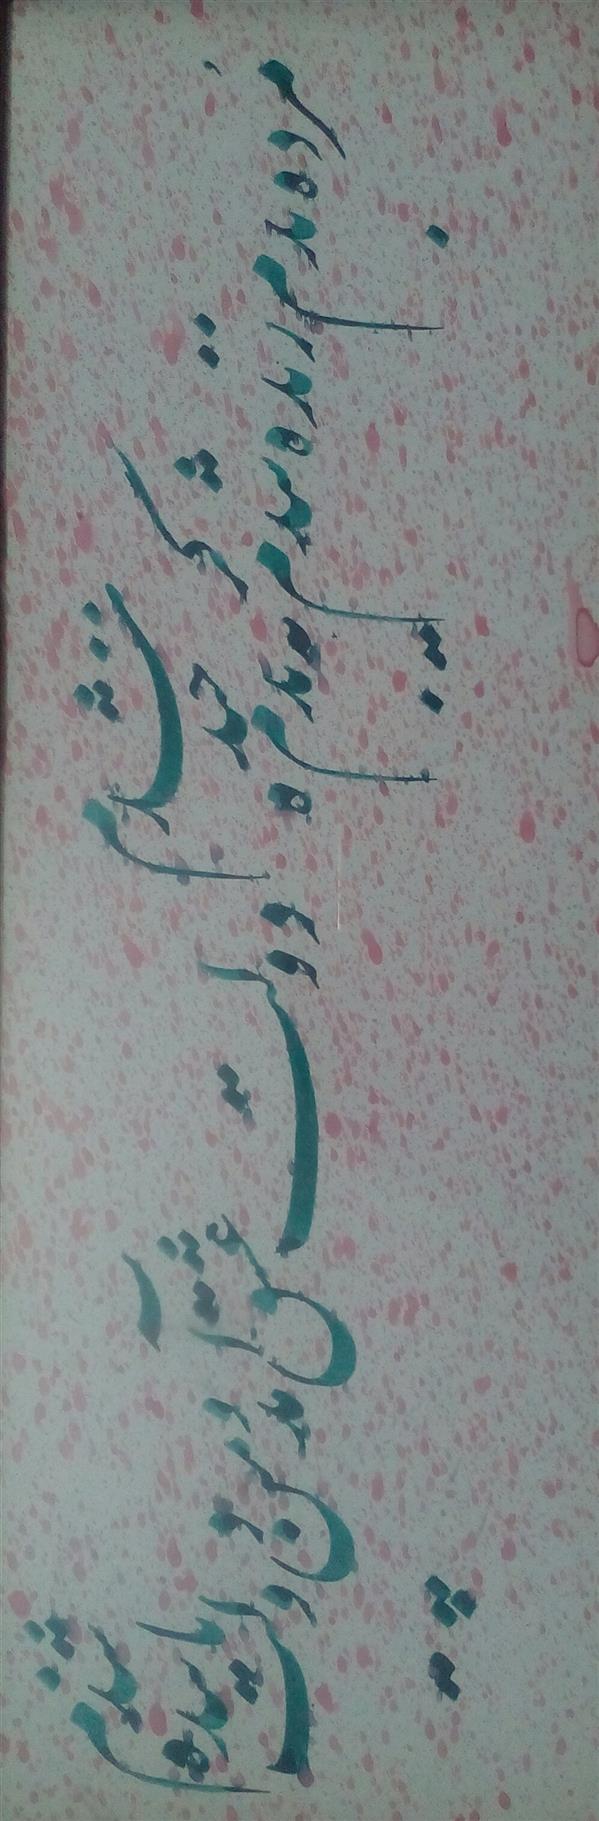 هنر خوشنویسی محفل خوشنویسی عبدالله جعفری # ابعاد بدون قاب 46*16 cm
شعر مولوی،نستعلیق،قاب گرفته شده